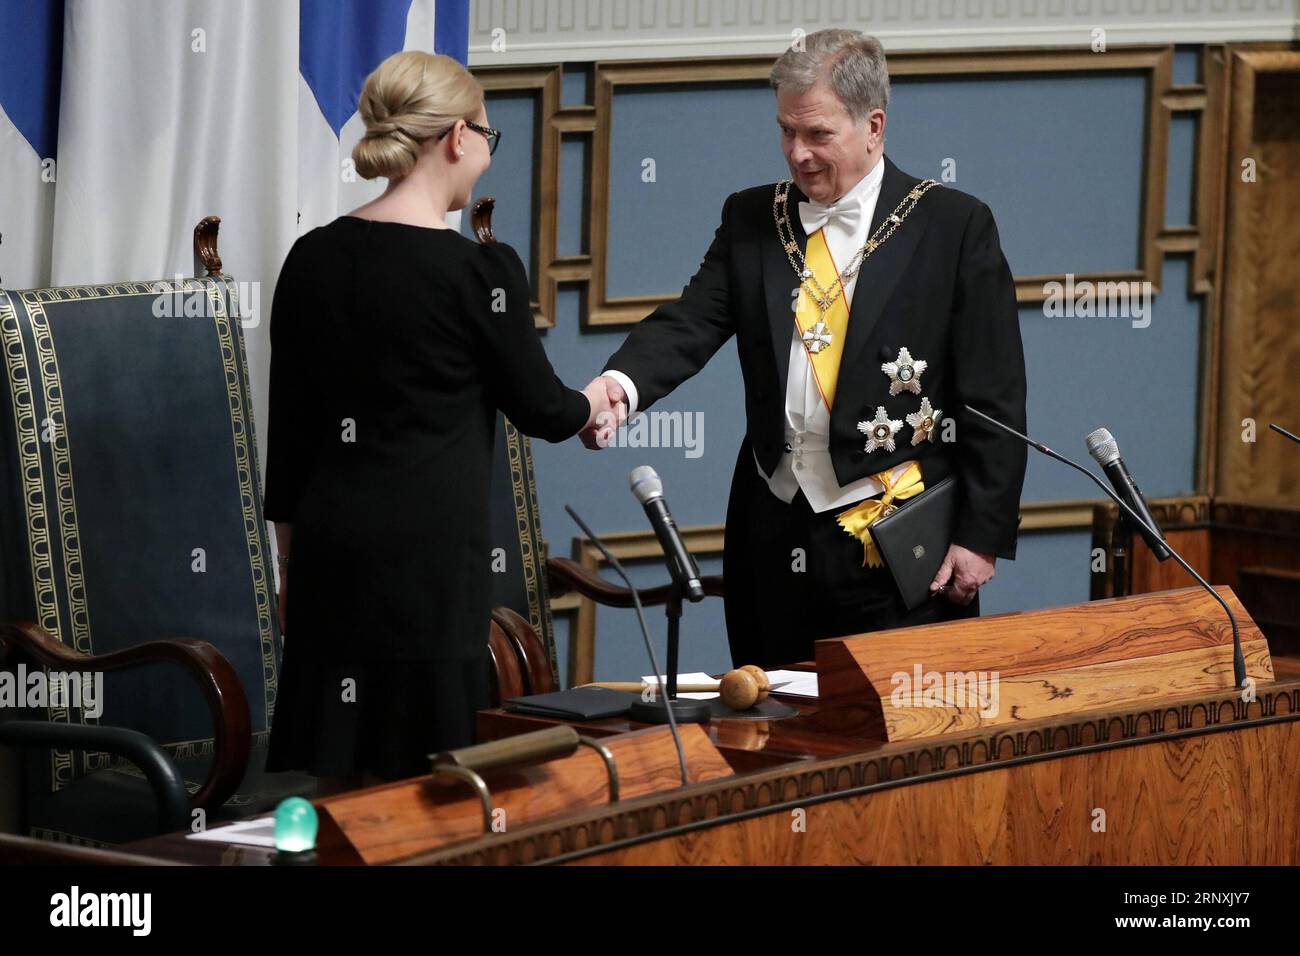 Bilder des Tages (180202) -- HELSINKI, 2 février 2018 -- le président finlandais Sauli Niinisto (à droite) serre la main de la présidente du Parlement Maria Lohela lors de l'investiture du président au Parlement finlandais à Helsinki, capitale de la Finlande, le 1 février 2018. Le président finlandais Sauli Niinisto a pris jeudi son engagement devant le Parlement finlandais, entamant son deuxième mandat de six ans en tant que président. (swt) FINLANDE-HELSINKI-PRÉSIDENT-INAUGURATION MattixMatikainen PUBLICATIONxNOTxINxCHN Banque D'Images